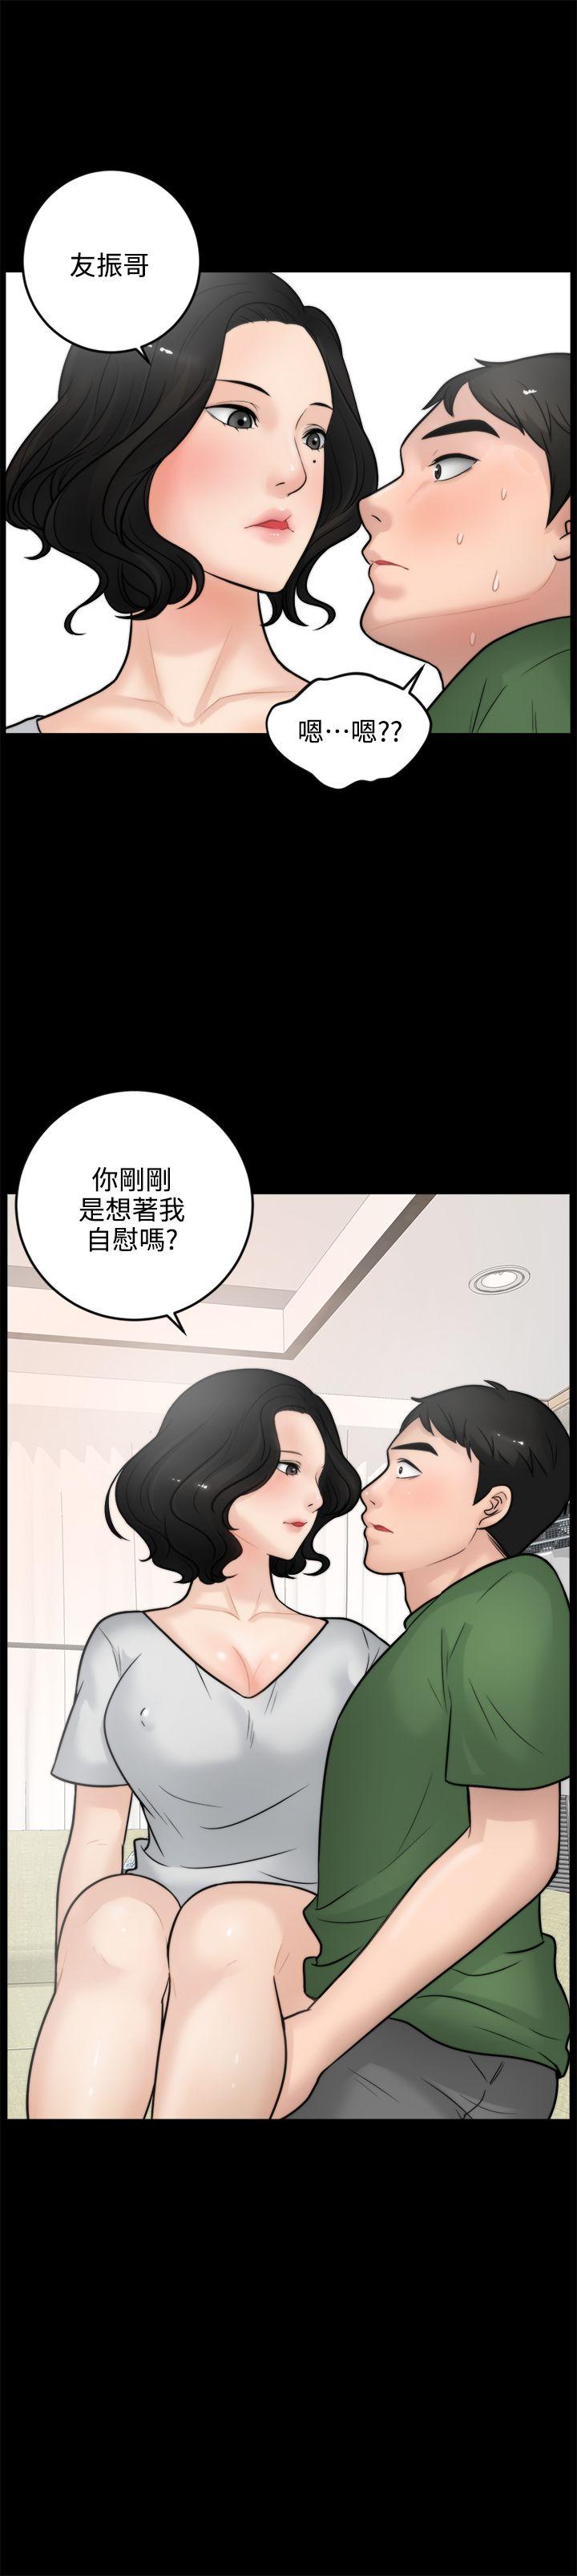 韩国污漫画 偷偷愛 第5话 1